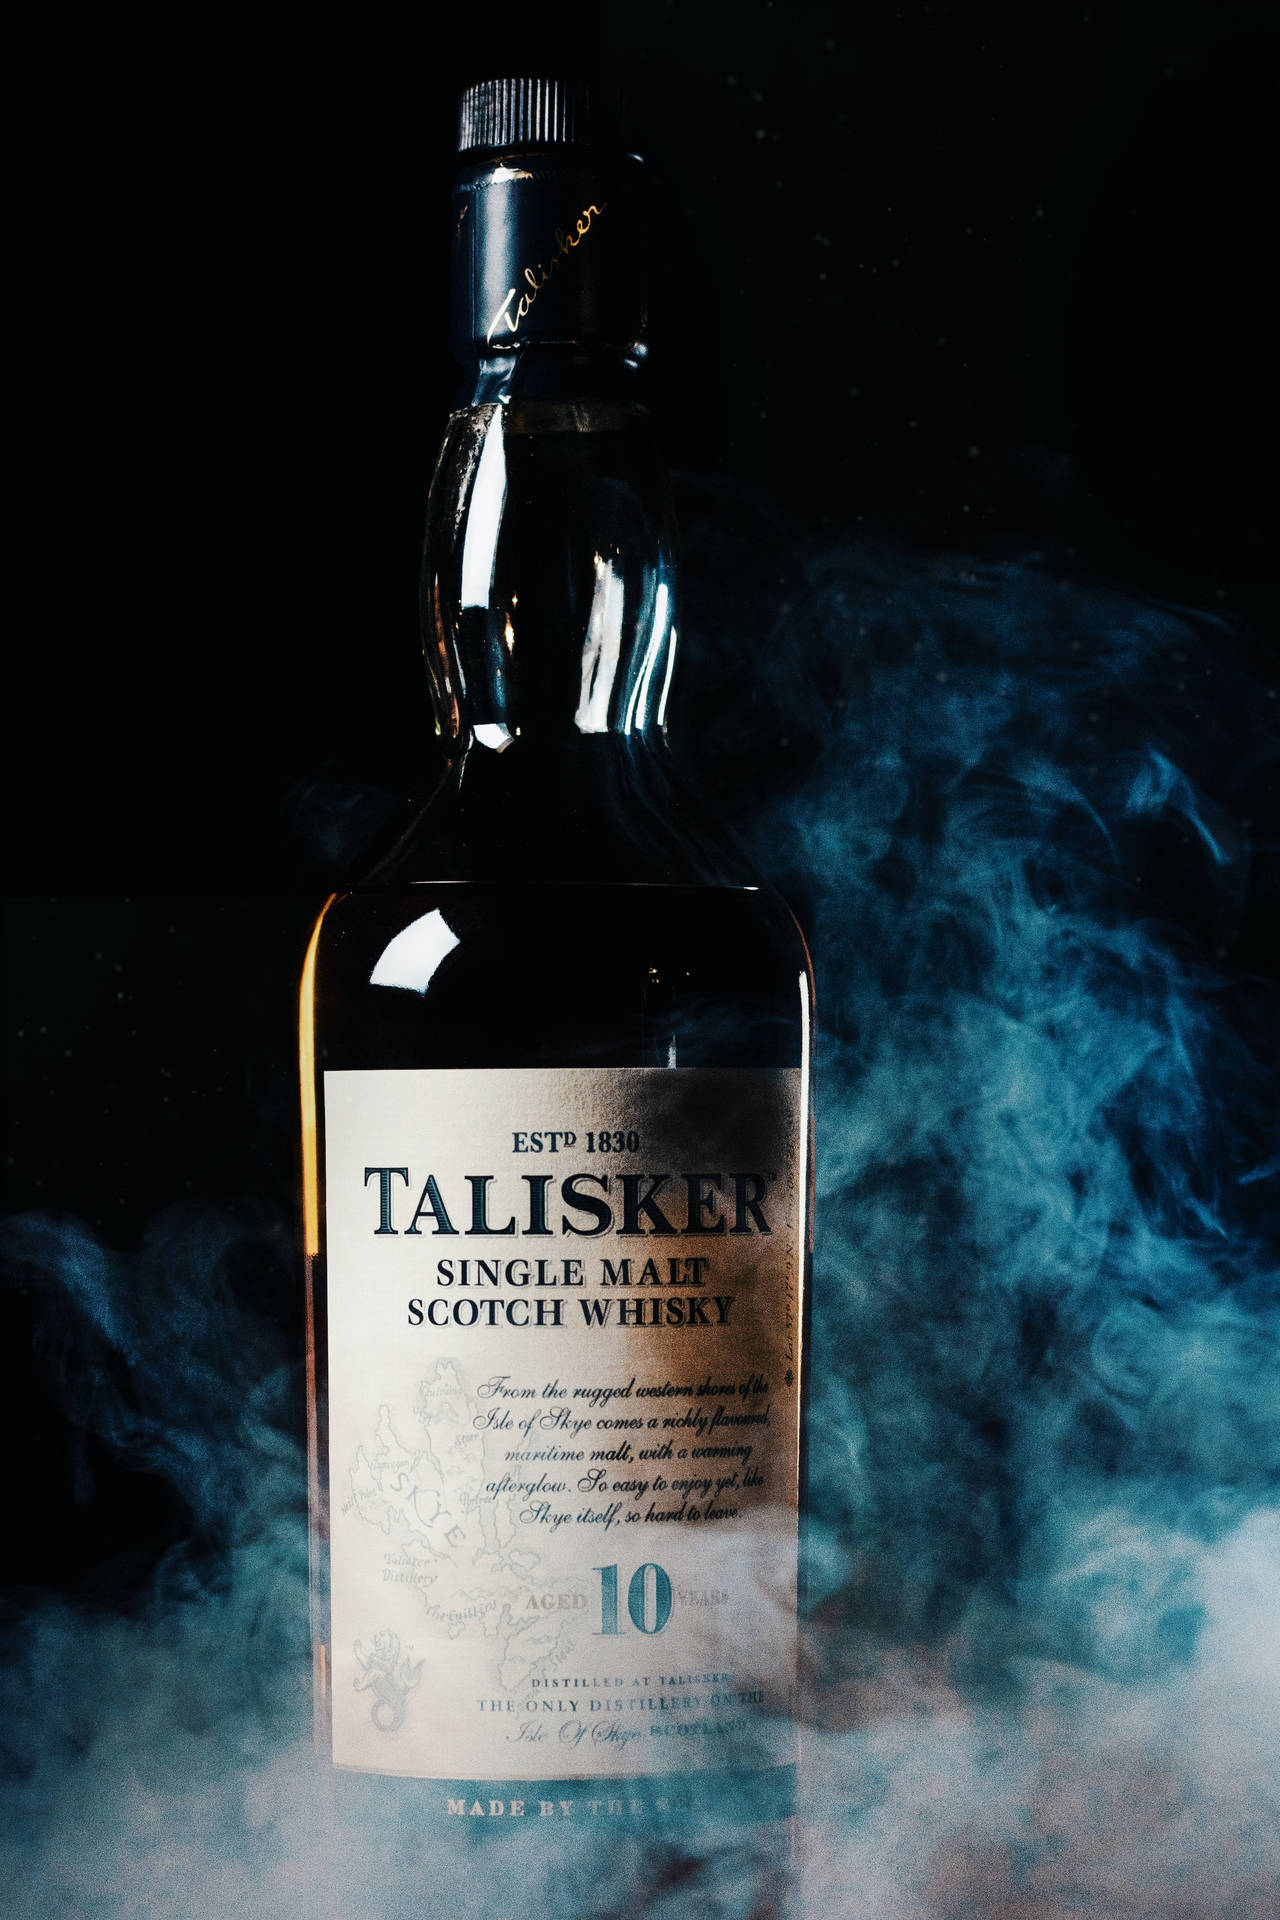 Smokeytalisker Scotch Whiskey Bottle - Rökig Talisker Scotch Whiskey-flaska Wallpaper